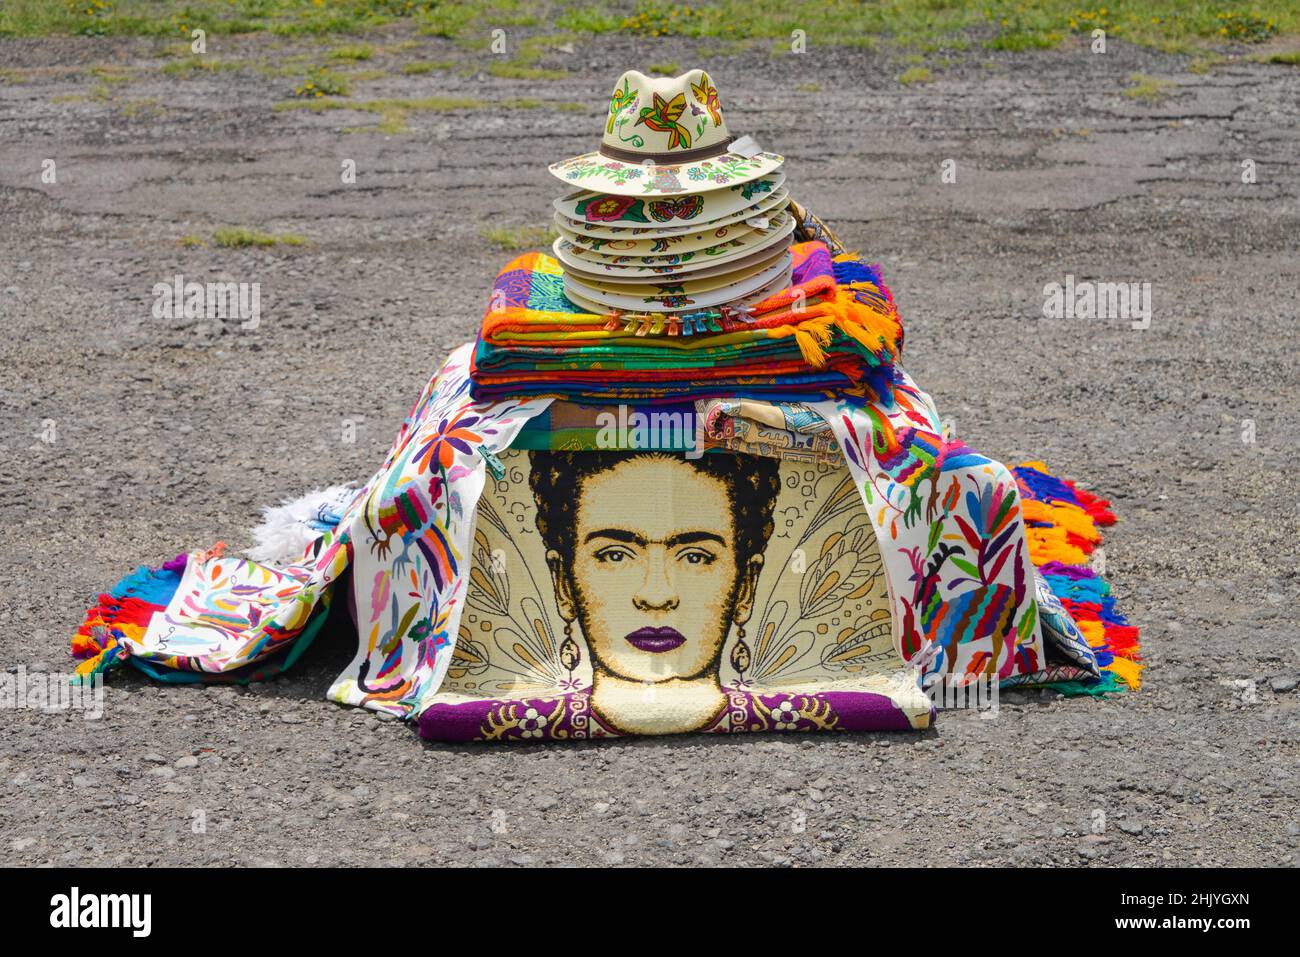 Andenkenverkauf, Ruinenstadt Teotihuacan, Mexiko Foto Stock